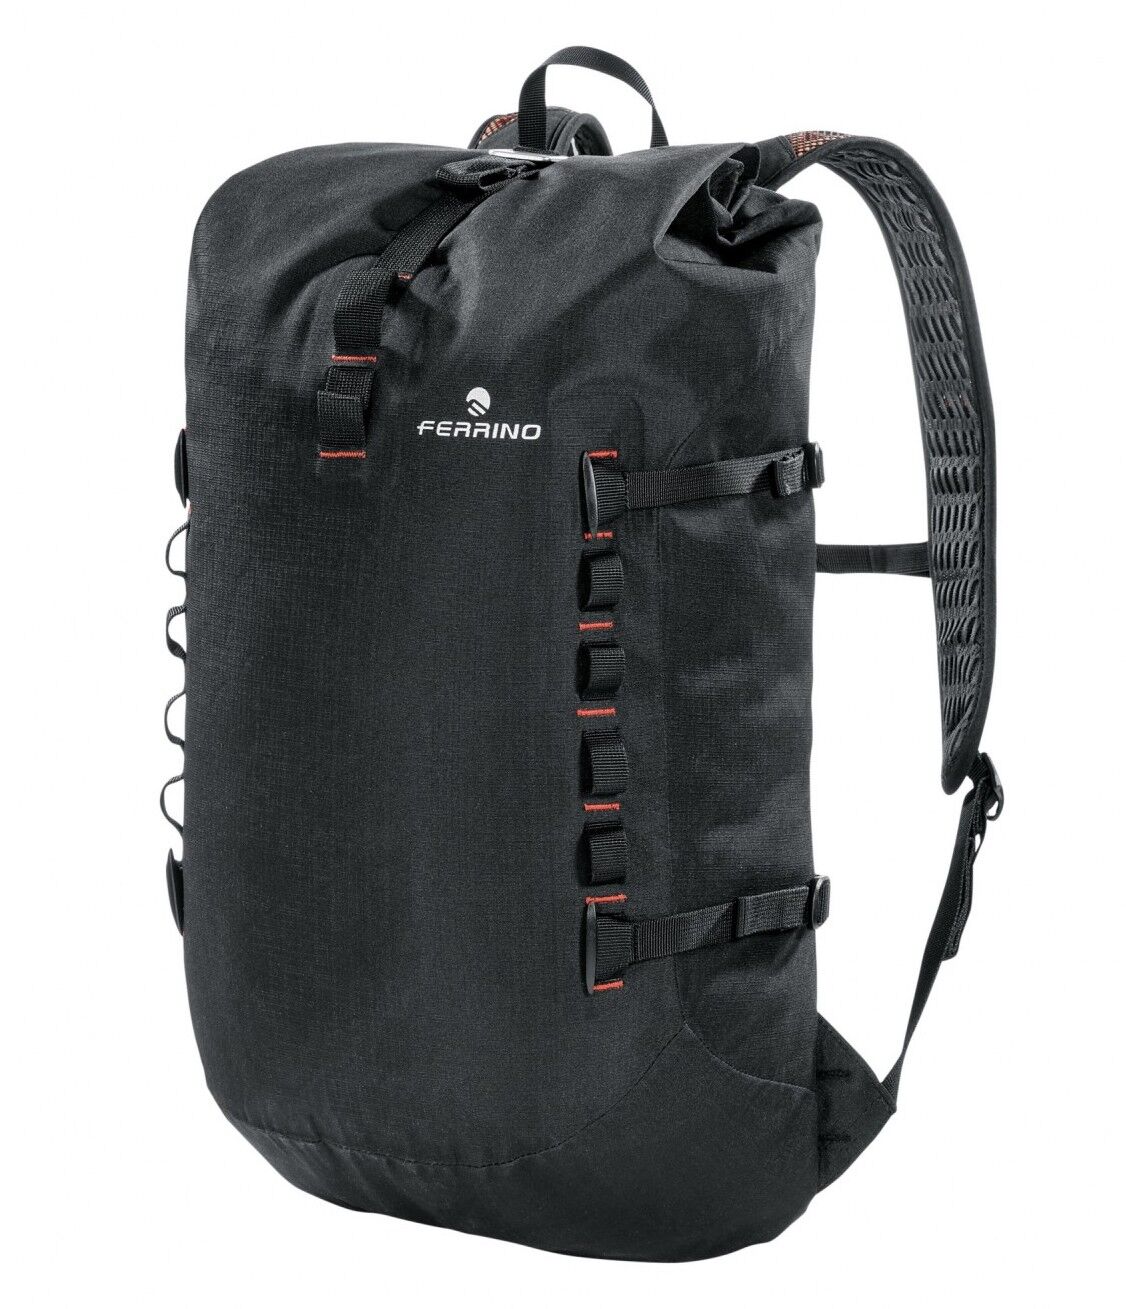 Ferrino Dry Up 22 - Hiking backpack